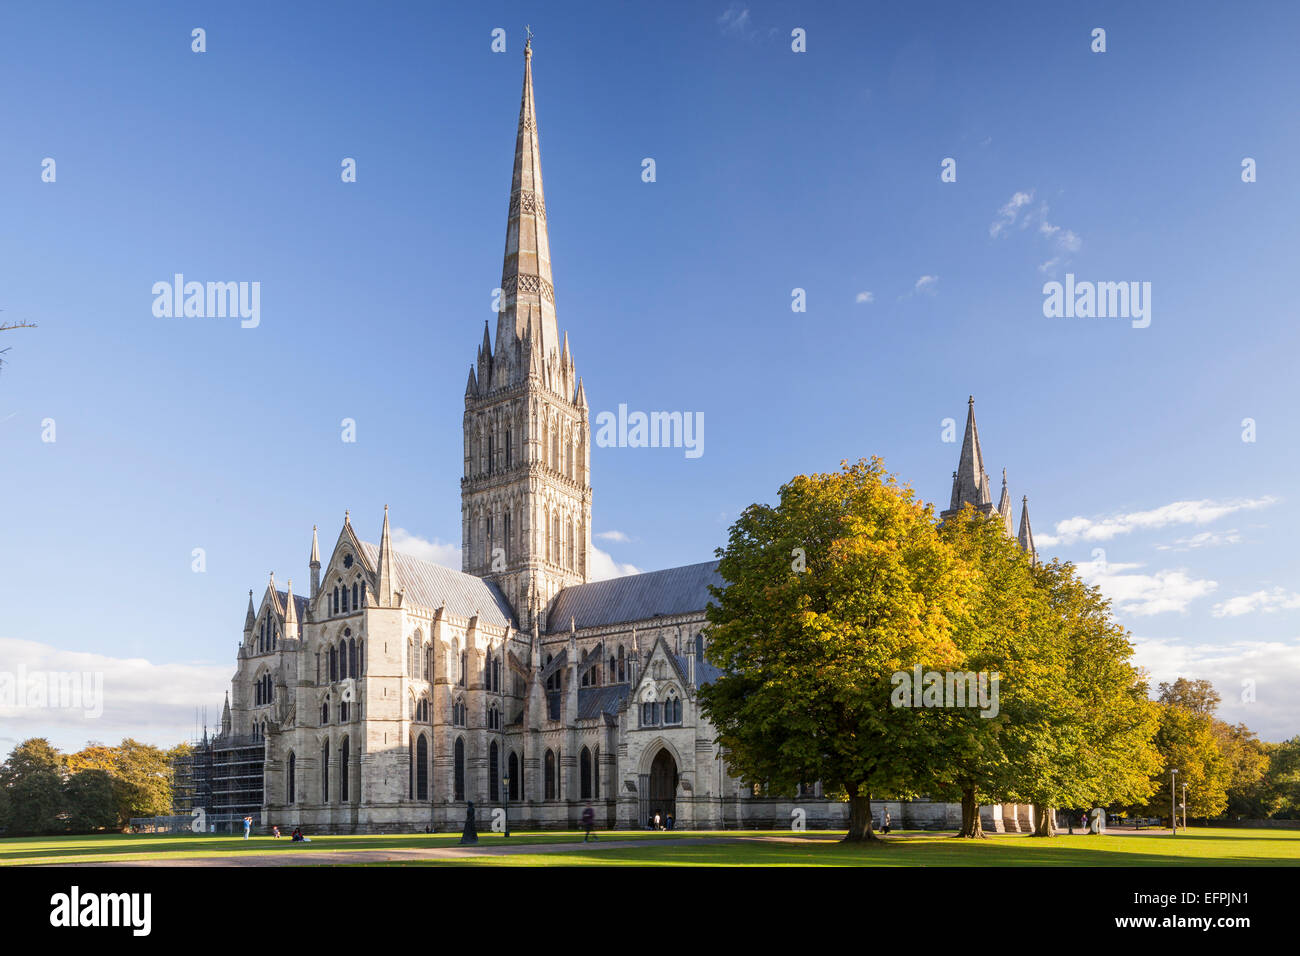 La cathédrale de Salisbury, Salisbury, Wiltshire, Angleterre, Royaume-Uni Banque D'Images